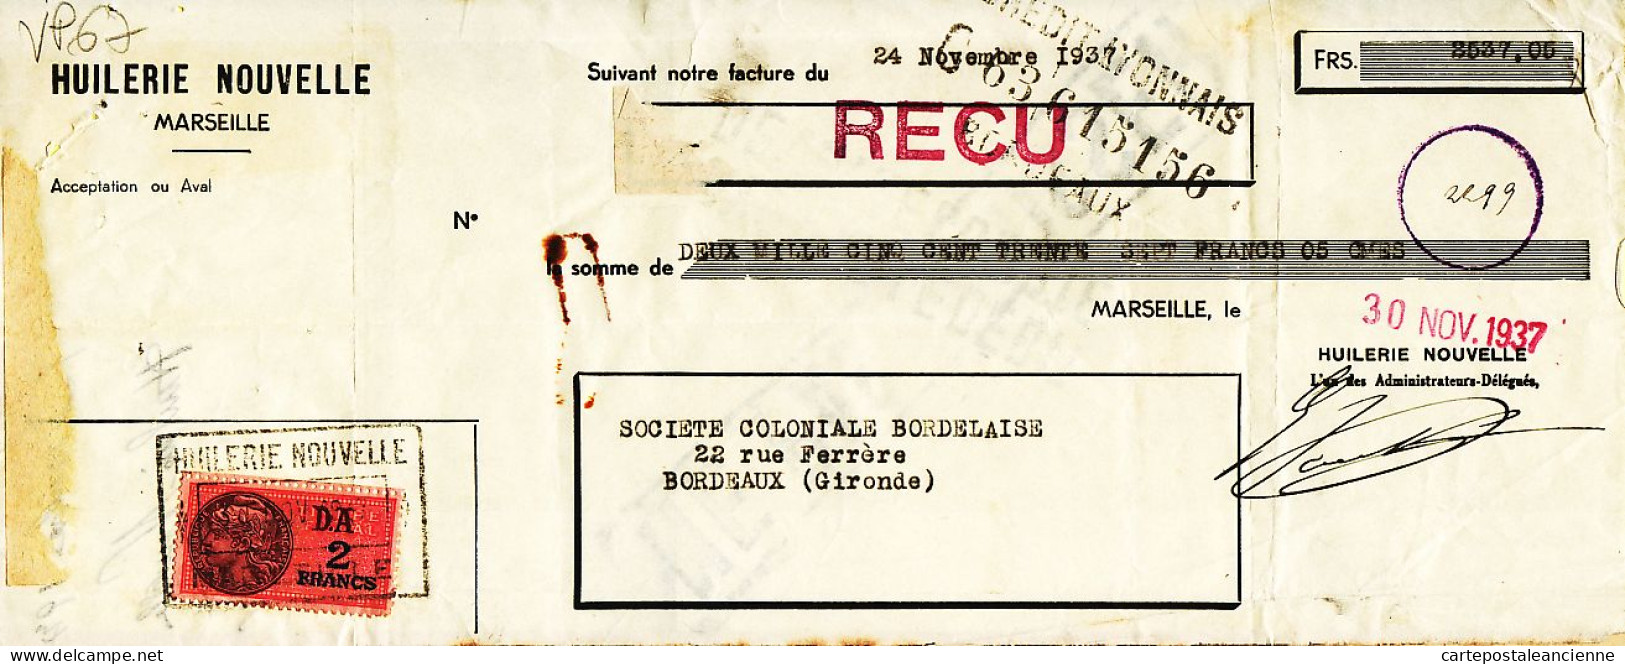 31276 / MARSEILLE Huilerie Nouvelle Lettre De Change 24.11.1937 à BESSE Coloniale Bordelaise Gironde Timbre Fiscal - Lettres De Change